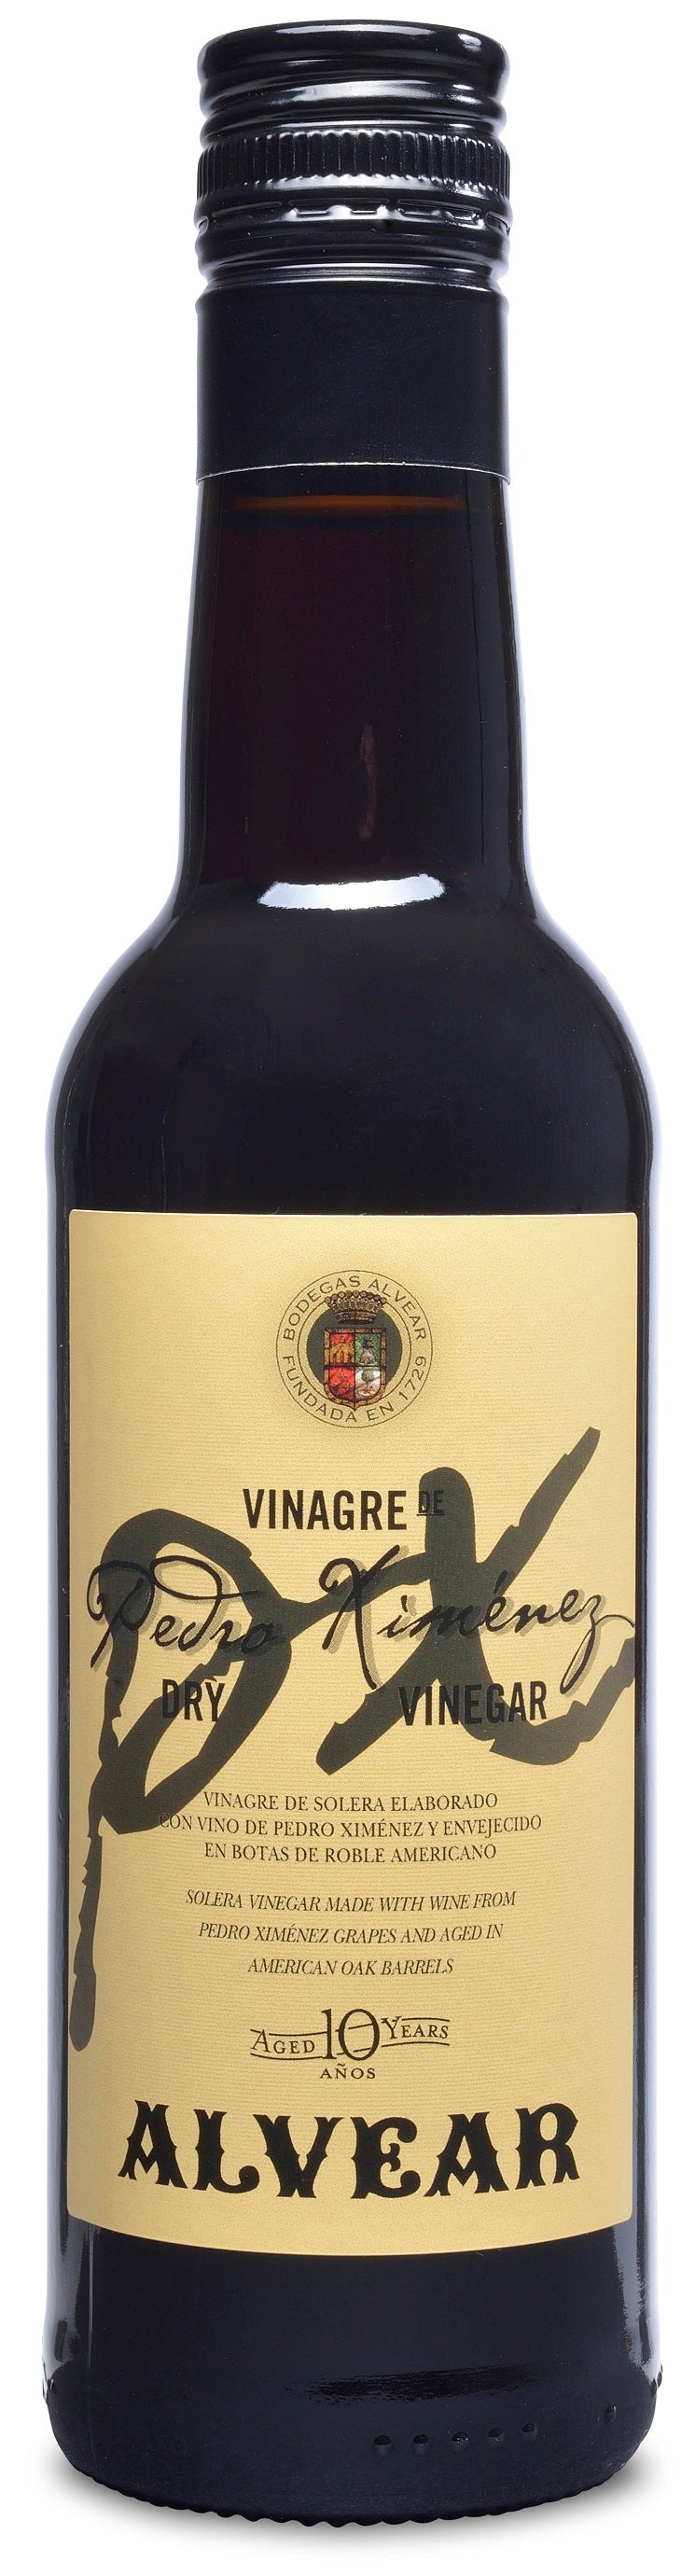 Pedro Ximenez Sherry Vinegar Dry 10 Yr Spain: 375ml